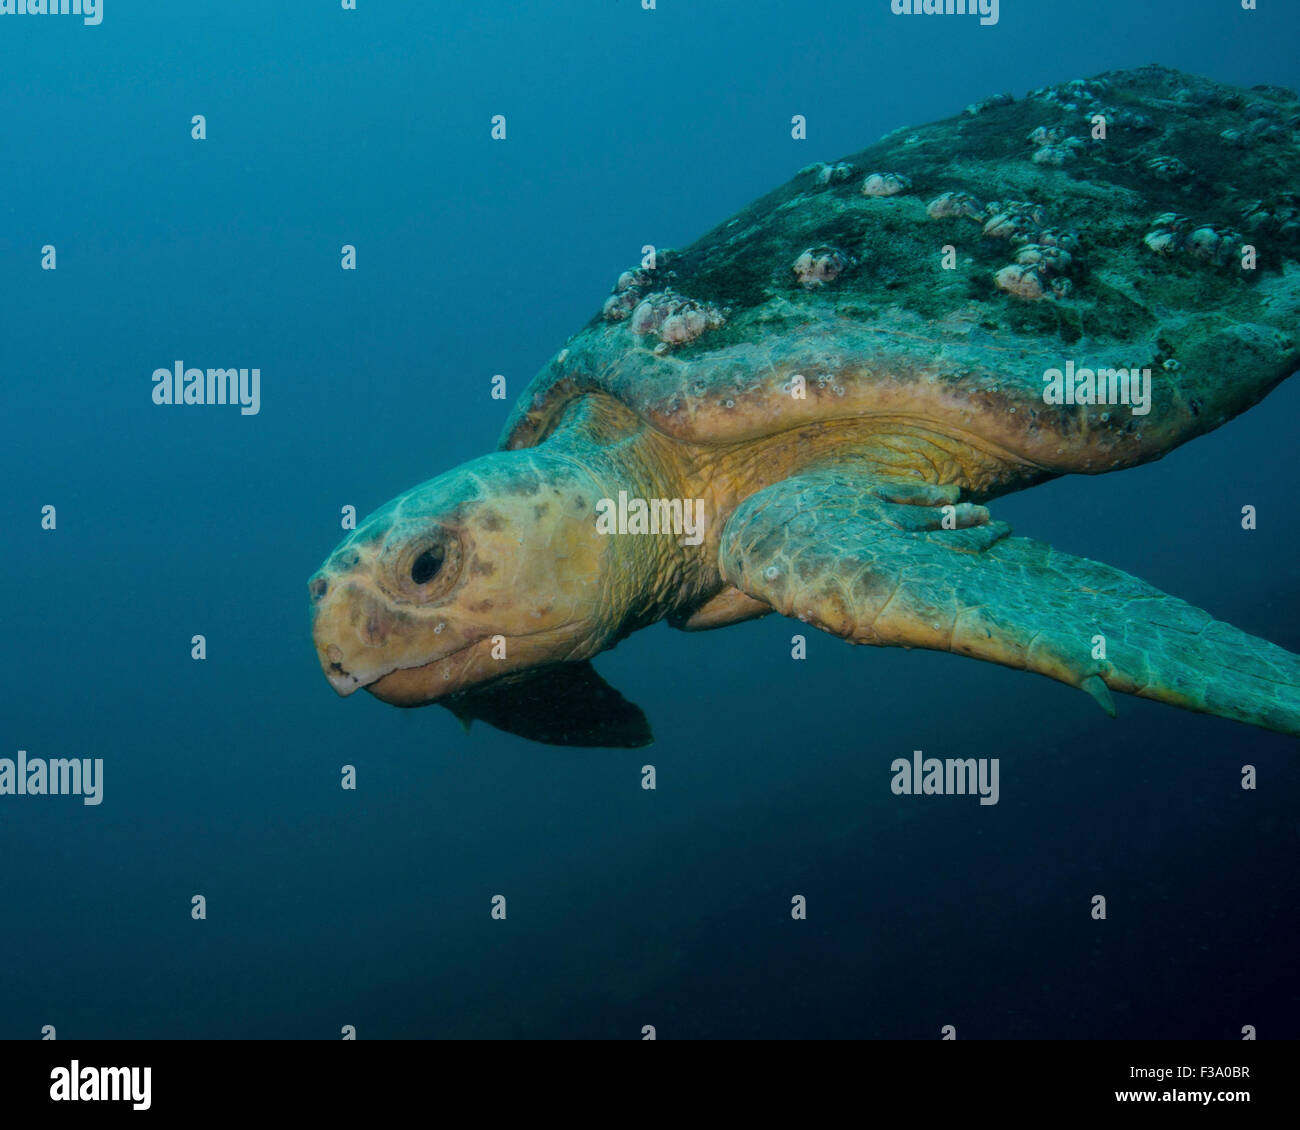 A loggerhead sea turtle off the coast of North Carolina. Stock Photo